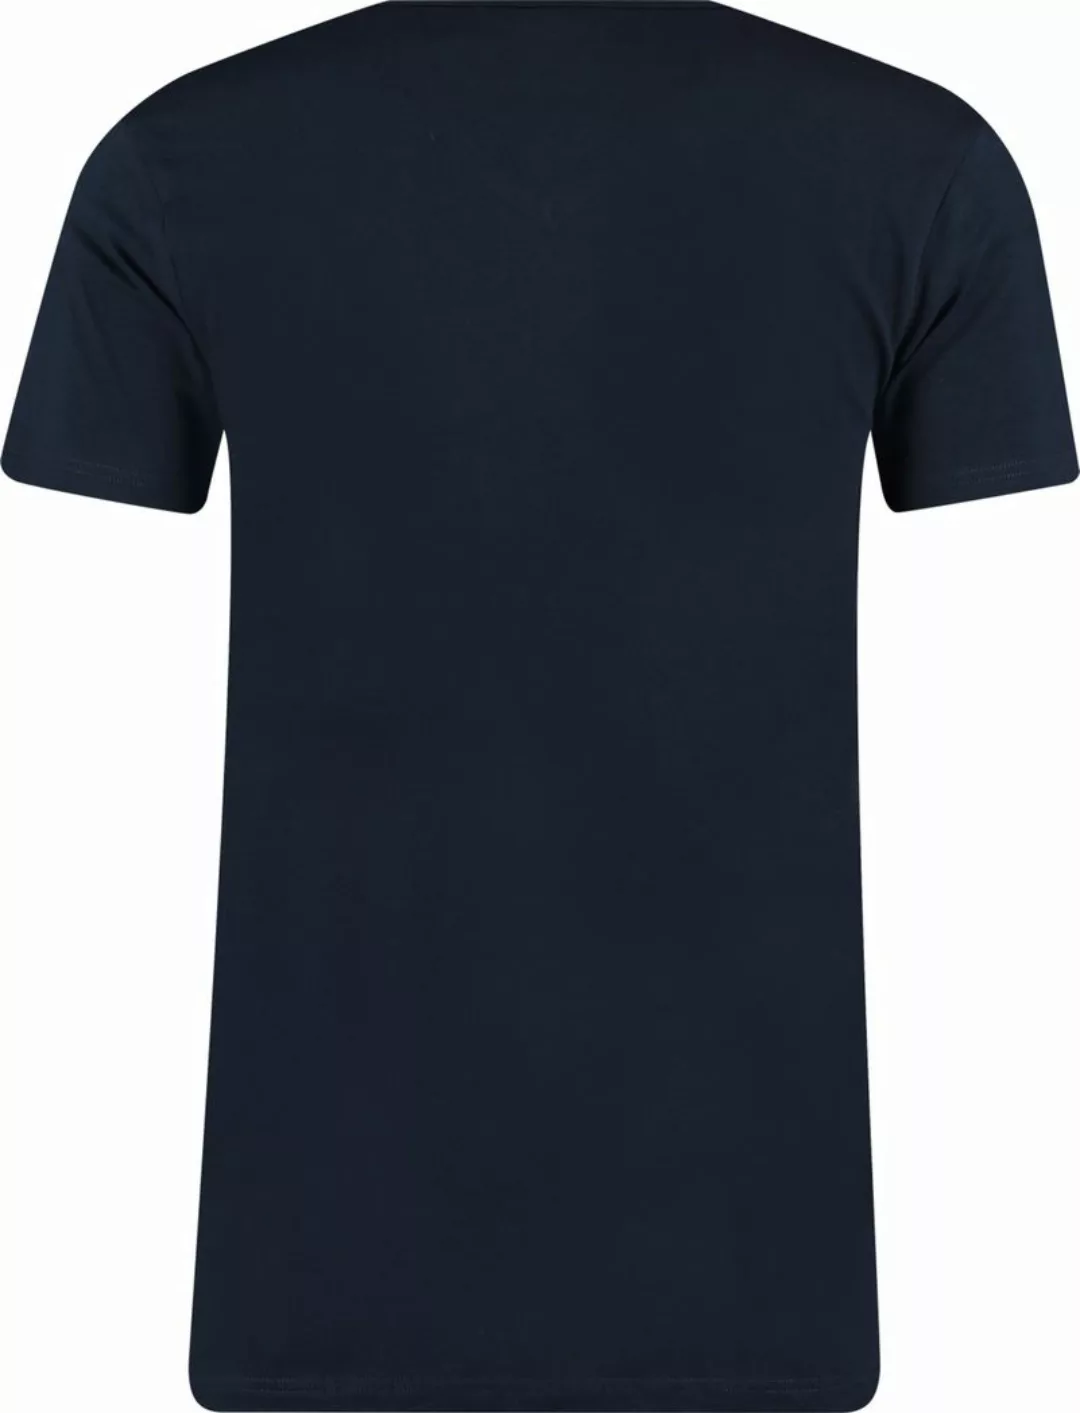 Garage 2-Pack Basic T-shirt Bio V-Ausschnitt Dunkelblau - Größe XL günstig online kaufen